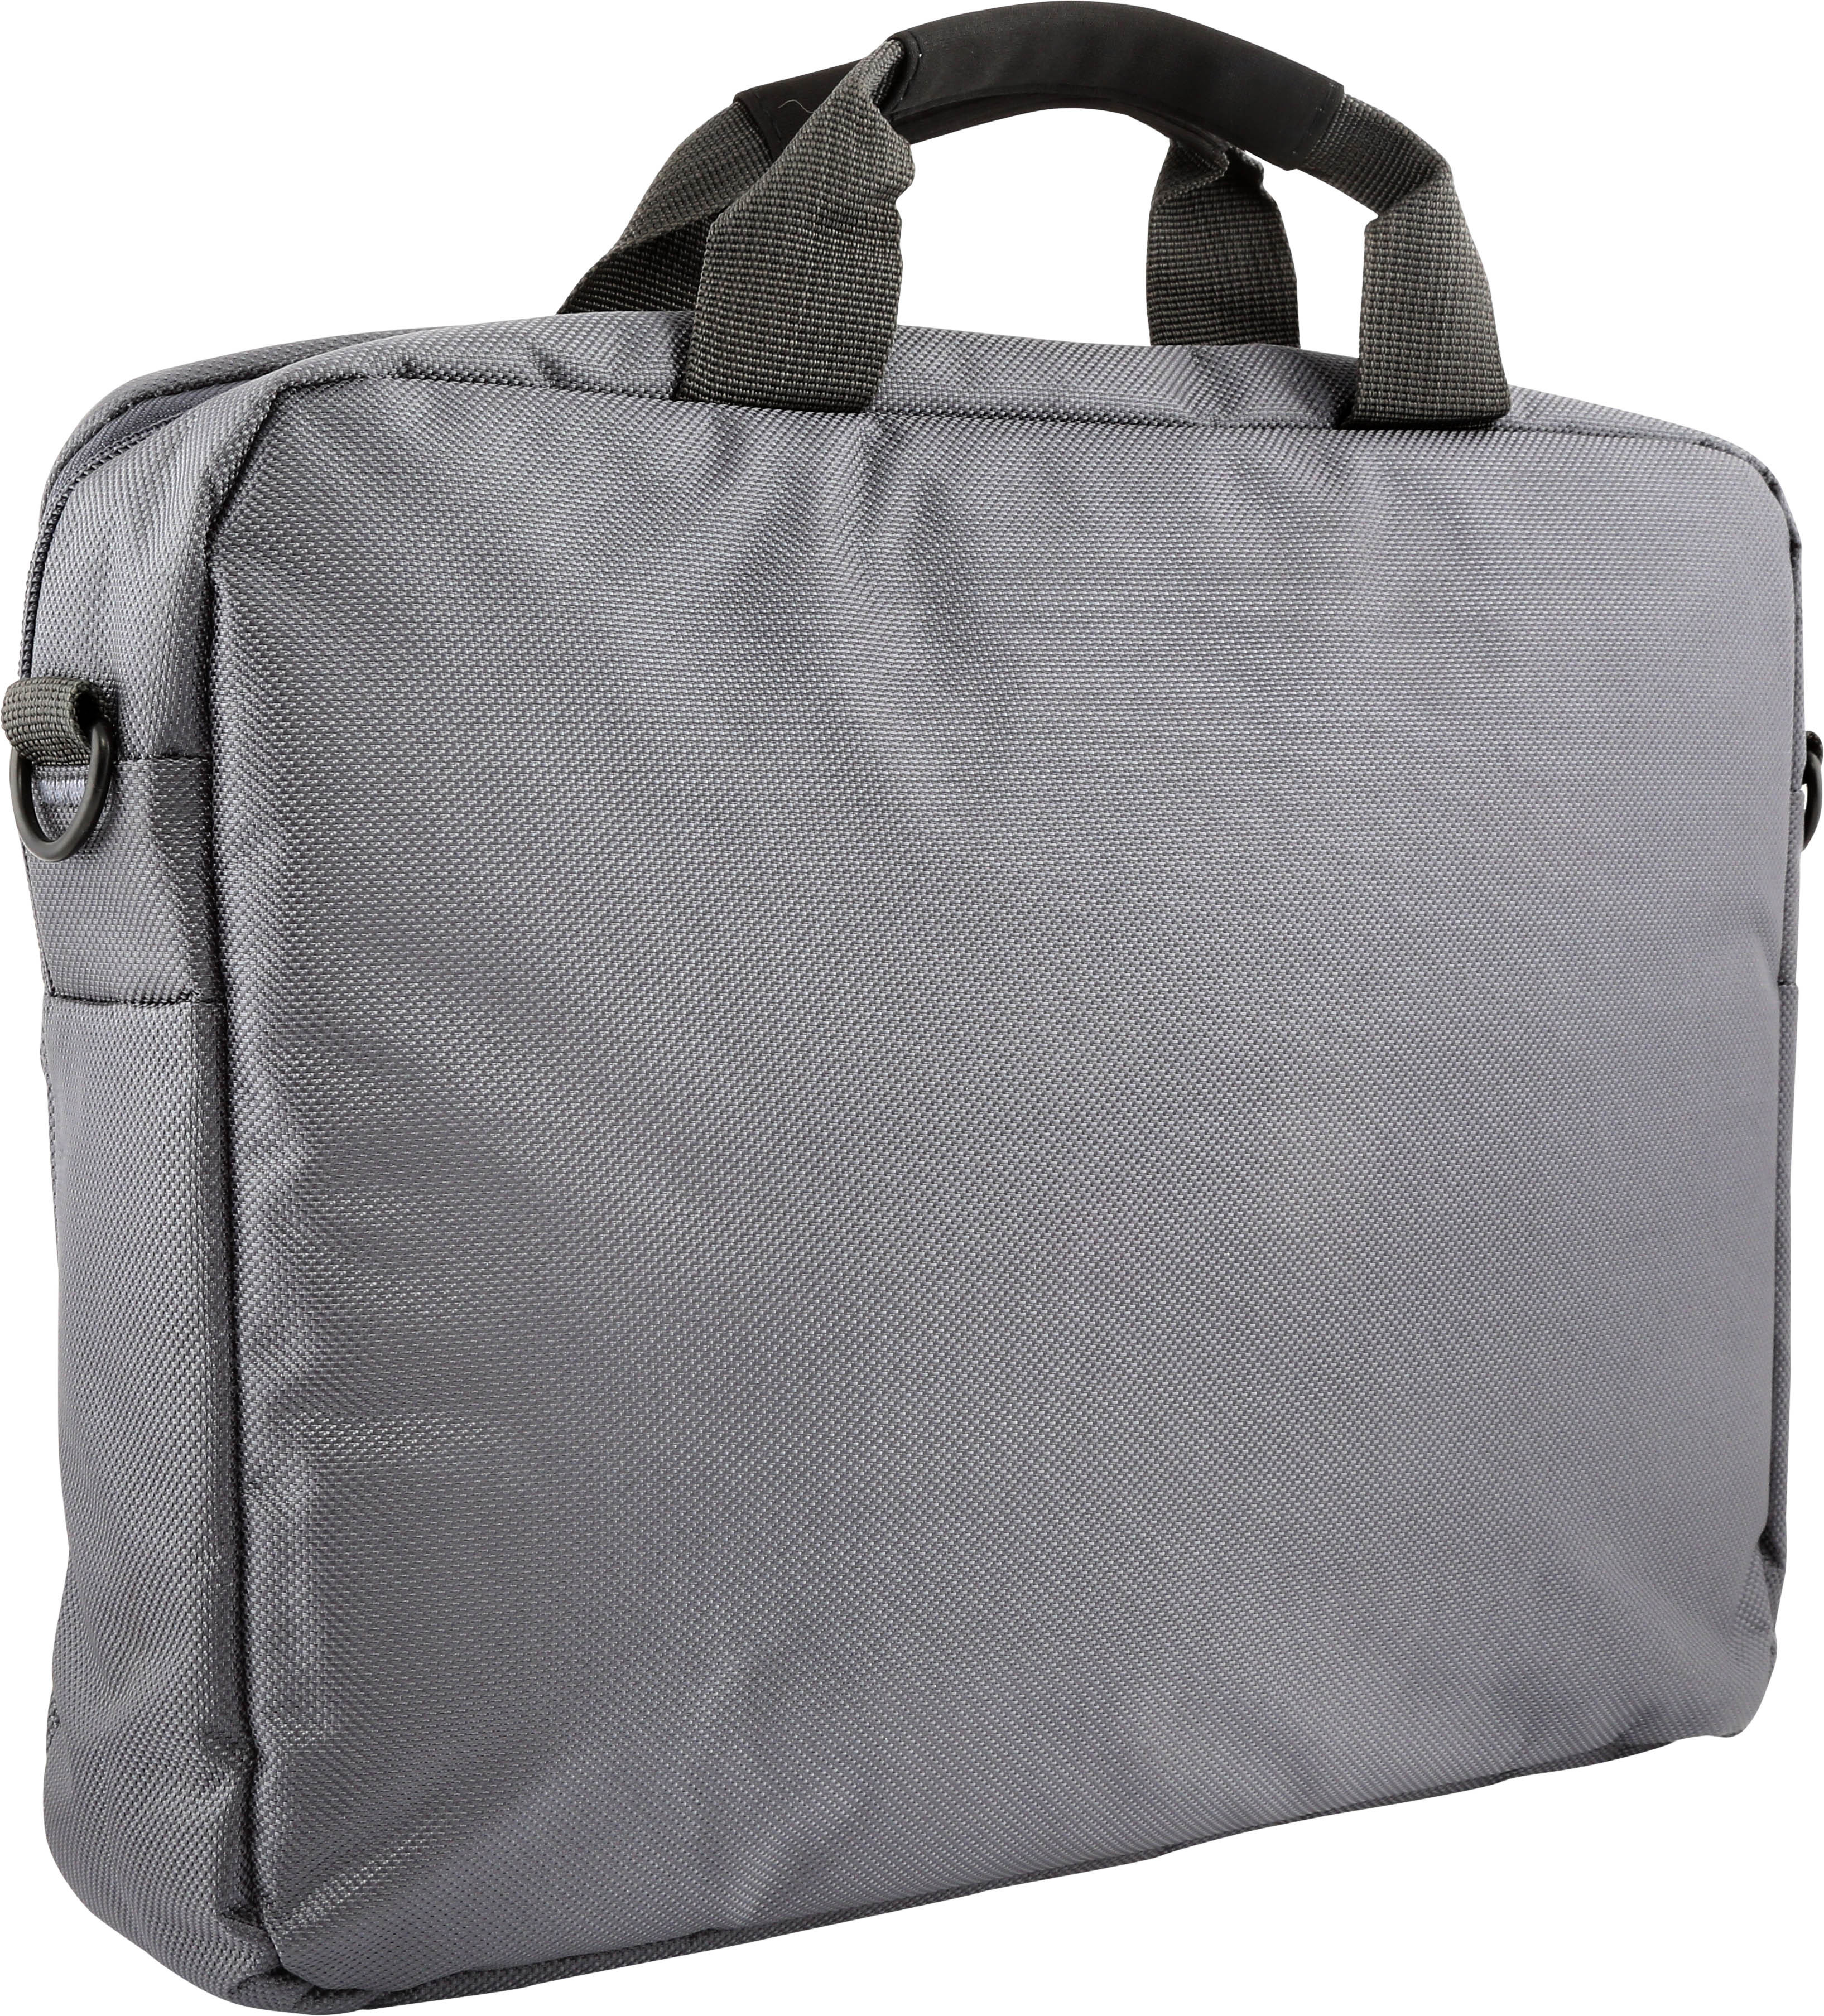 Buy Slim Design Laptop Bag With Shoulder Strap, 14 Inch Grey Online at Low Price, October 2018’s ...